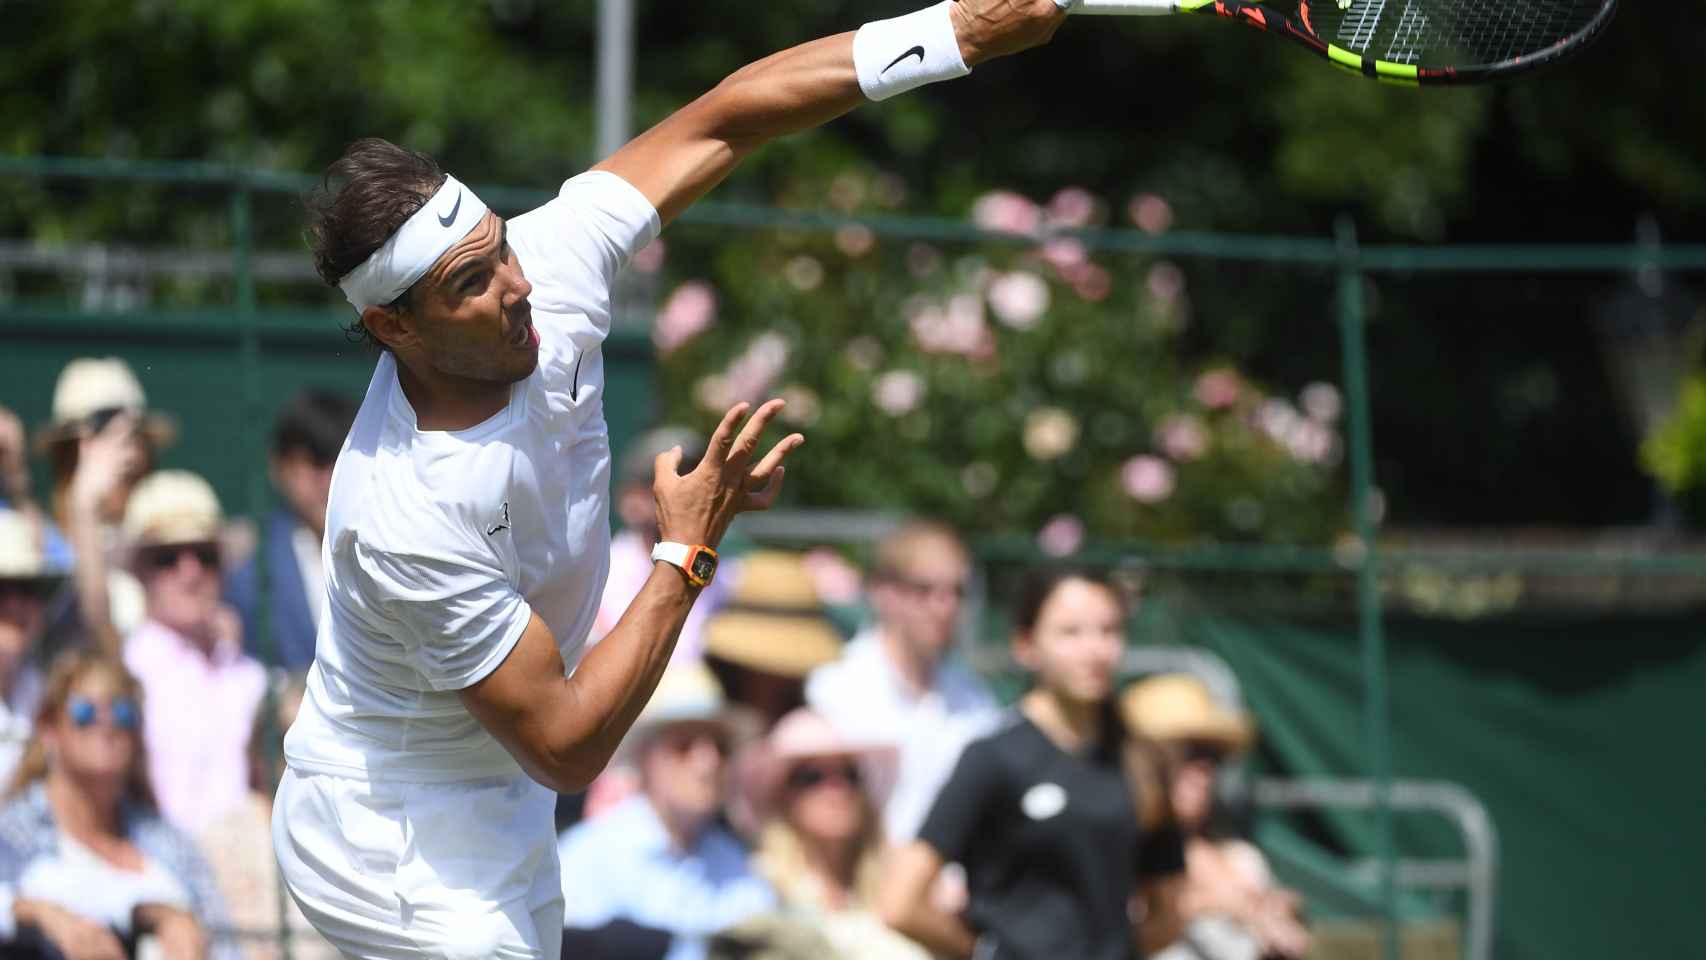 Manto asistente Torbellino Wimbledon: Nadal y Nike innovan y sacan una línea de ropa con una  característica inconfundible de Rafa